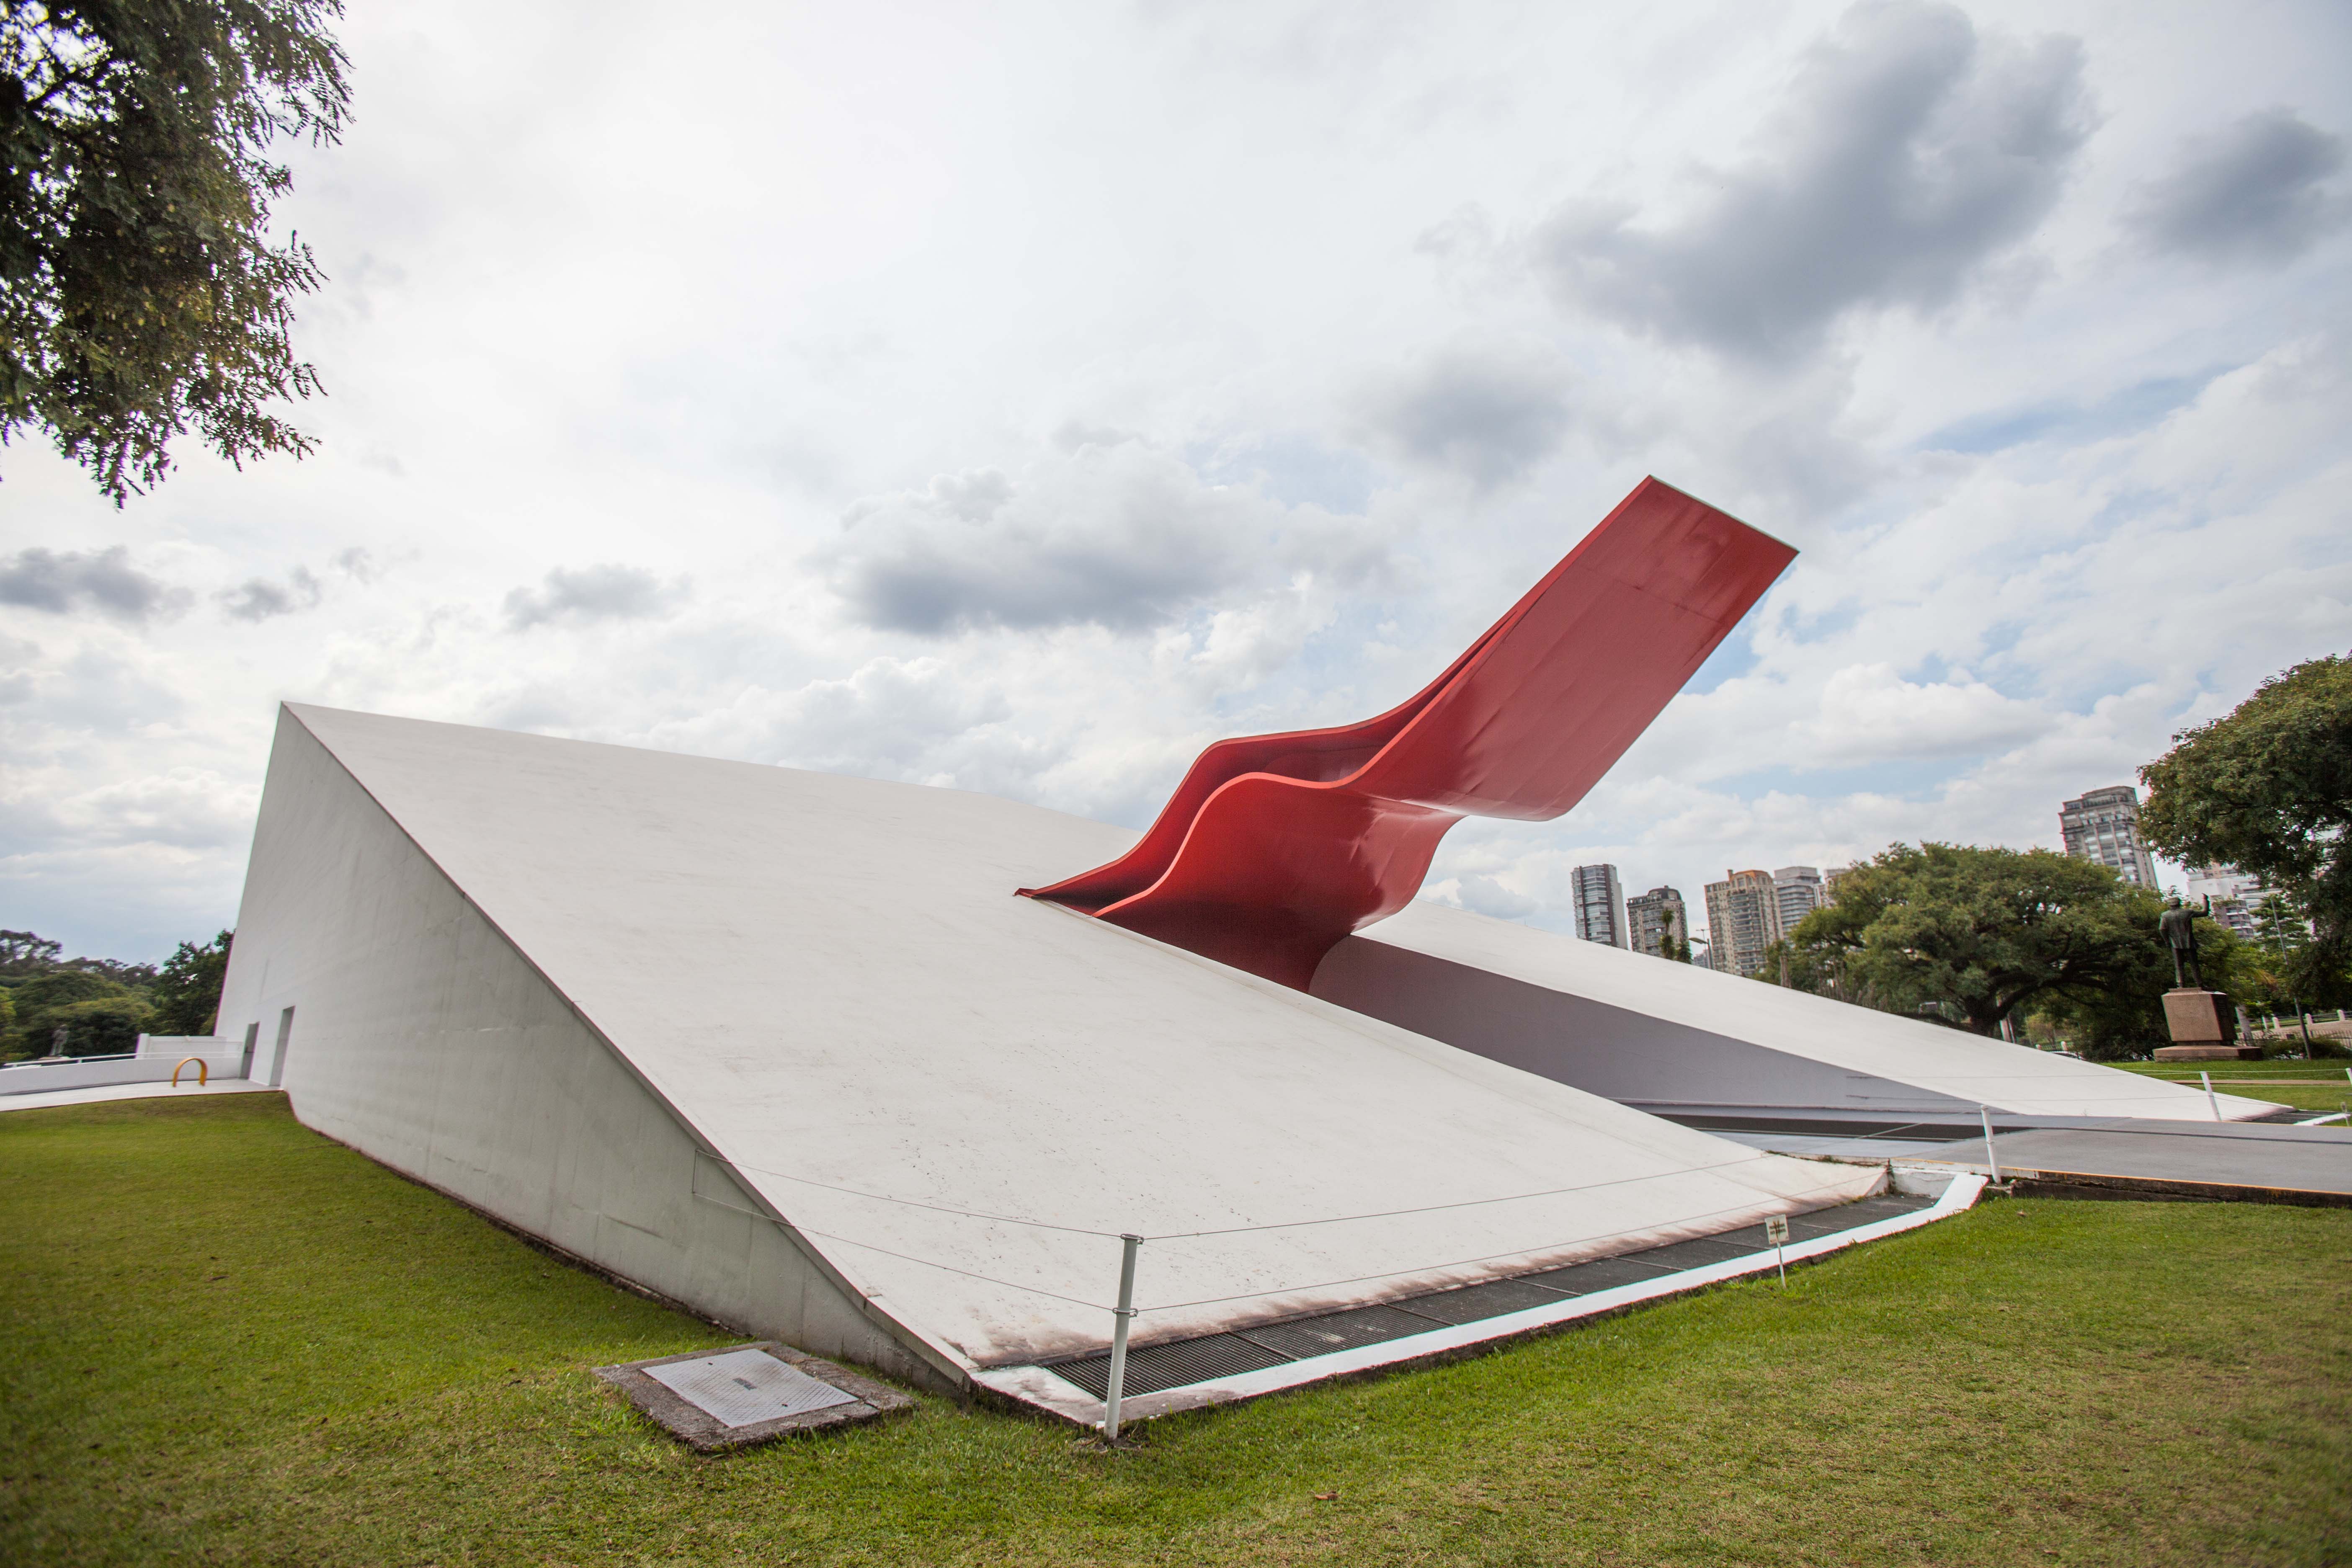 Situado no Parque Ibirapuera, o Auditório Ibirapuera foi concebido nos anos 50 pelo arquiteto Oscar Niemeyer, para apresentações de espetáculos musicais, além de ser também uma escola de música popular brasileira. O Parque é tombado, patrimônio histórico de São Paulo, e conta com uma área de 158 hectares. (Foto: Rogério Cassimiro/MTur)